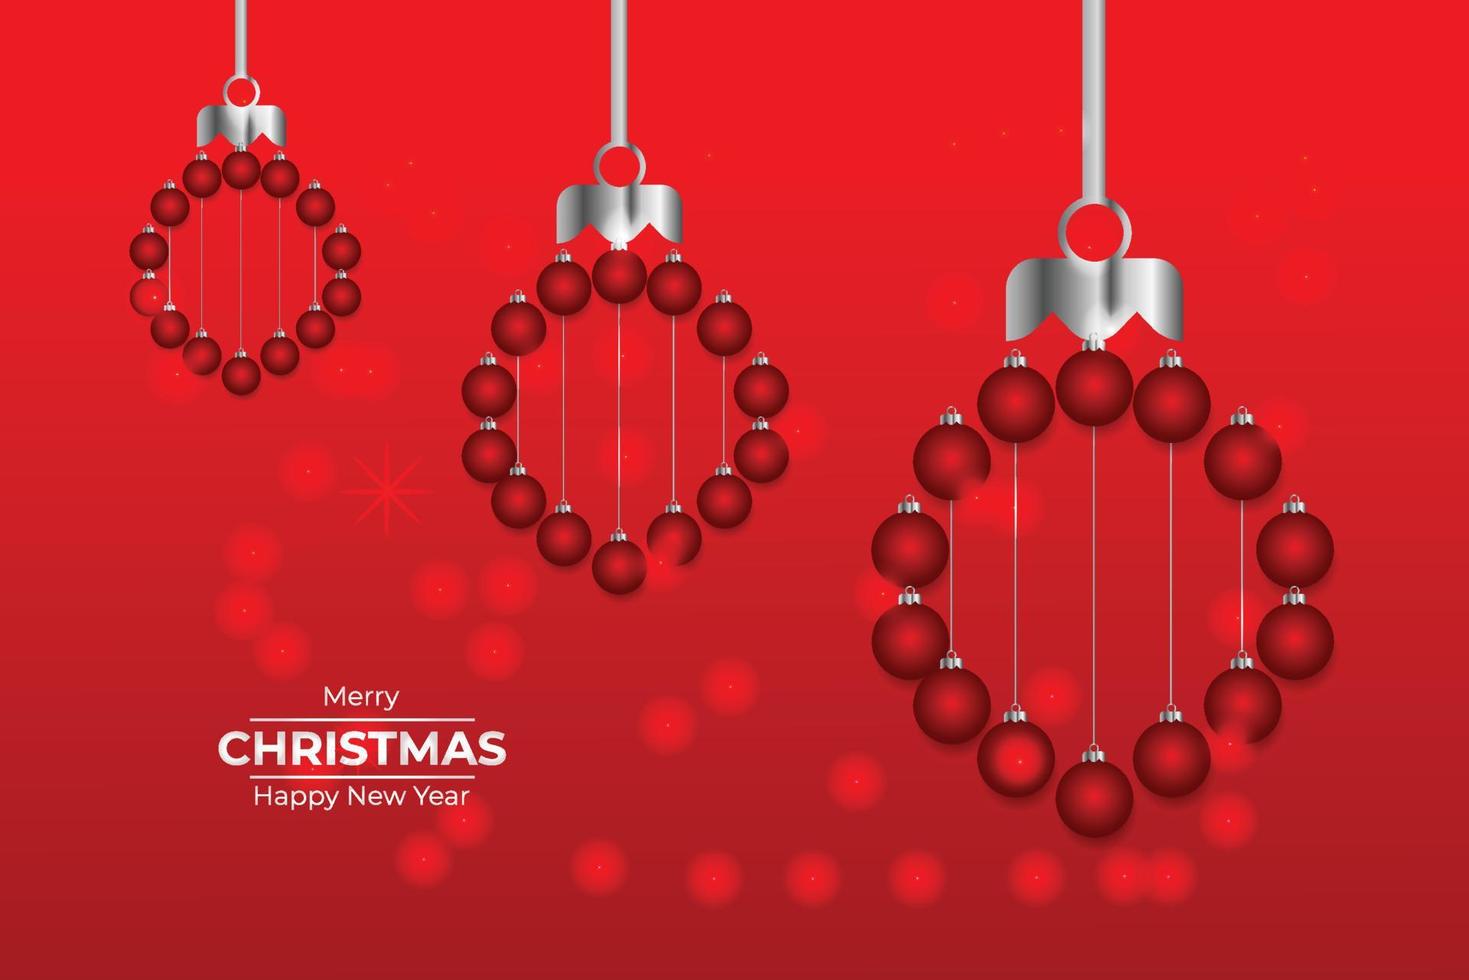 röd jul och ny år typografisk på vit bakgrund med vinter- landskap horisontell ny år bakgrund, rubriker, affischer, kort, website.vector illustration vektor